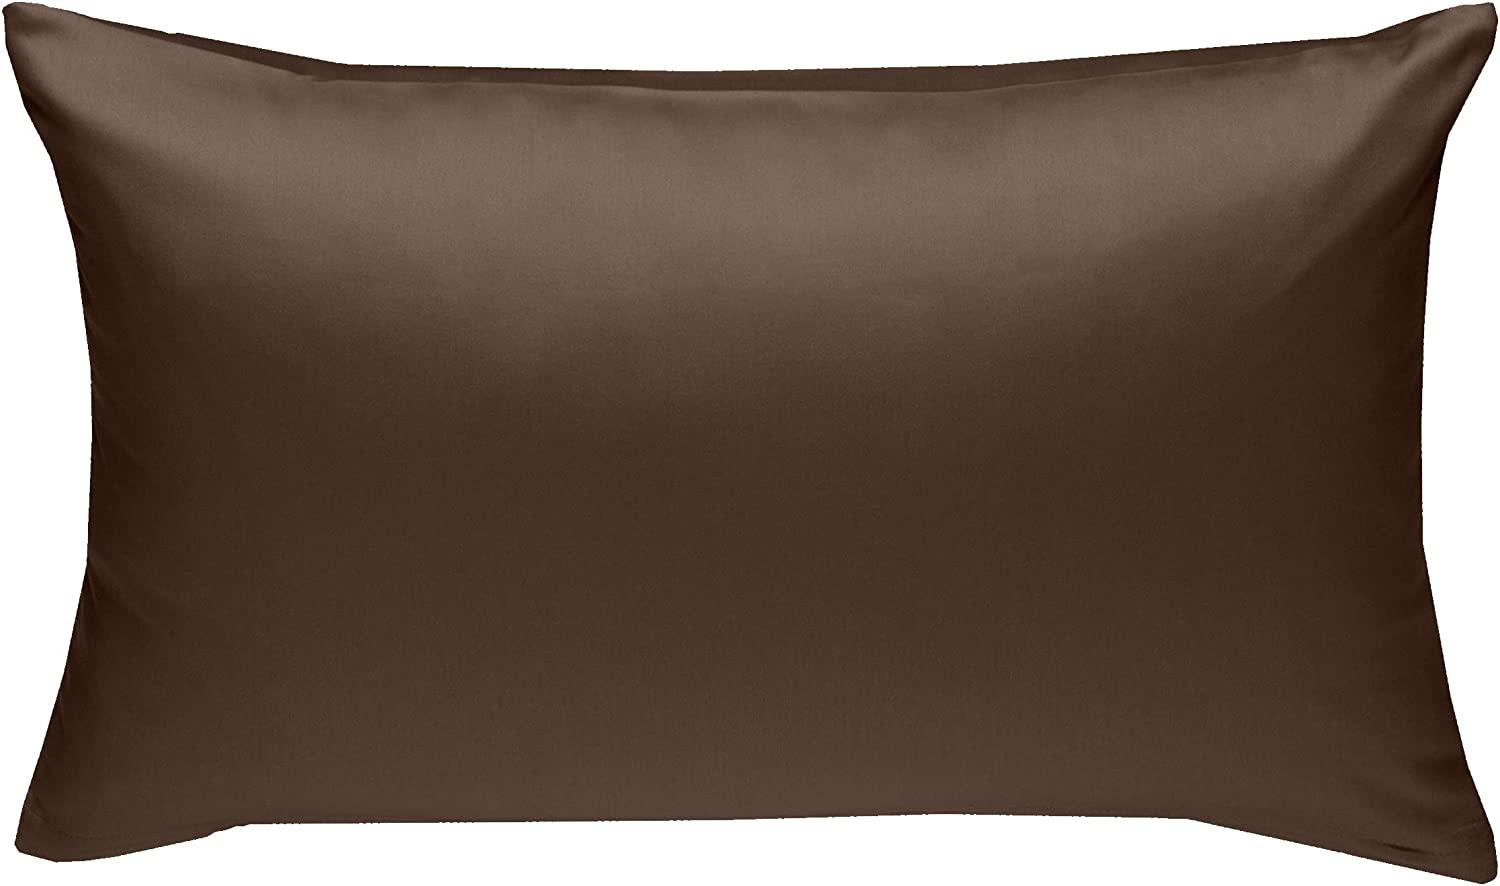 Bettwaesche-mit-Stil Mako-Satin / Baumwollsatin Bettwäsche uni / einfarbig dunkelbraun Kissenbezug 50x70 cm Bild 1